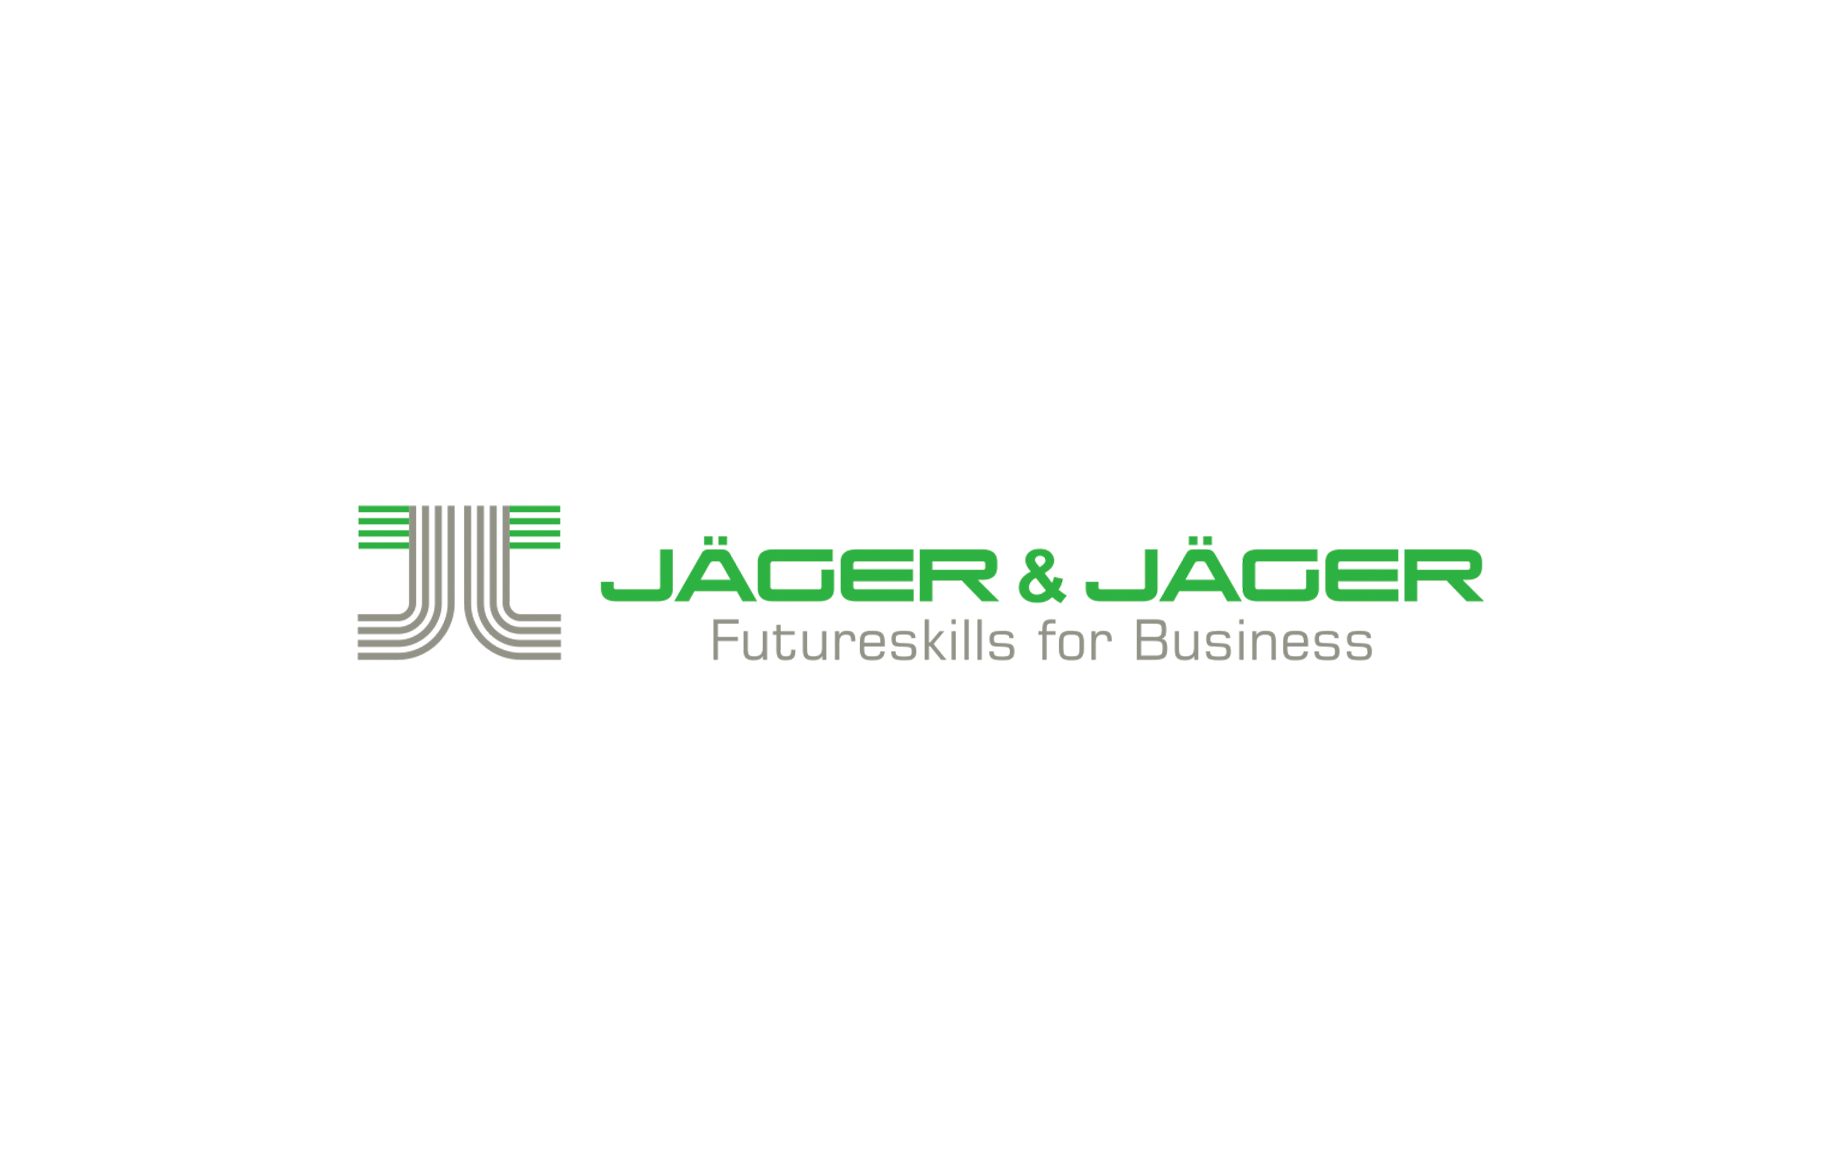 Jäger & Jäger: Futureskills for Business